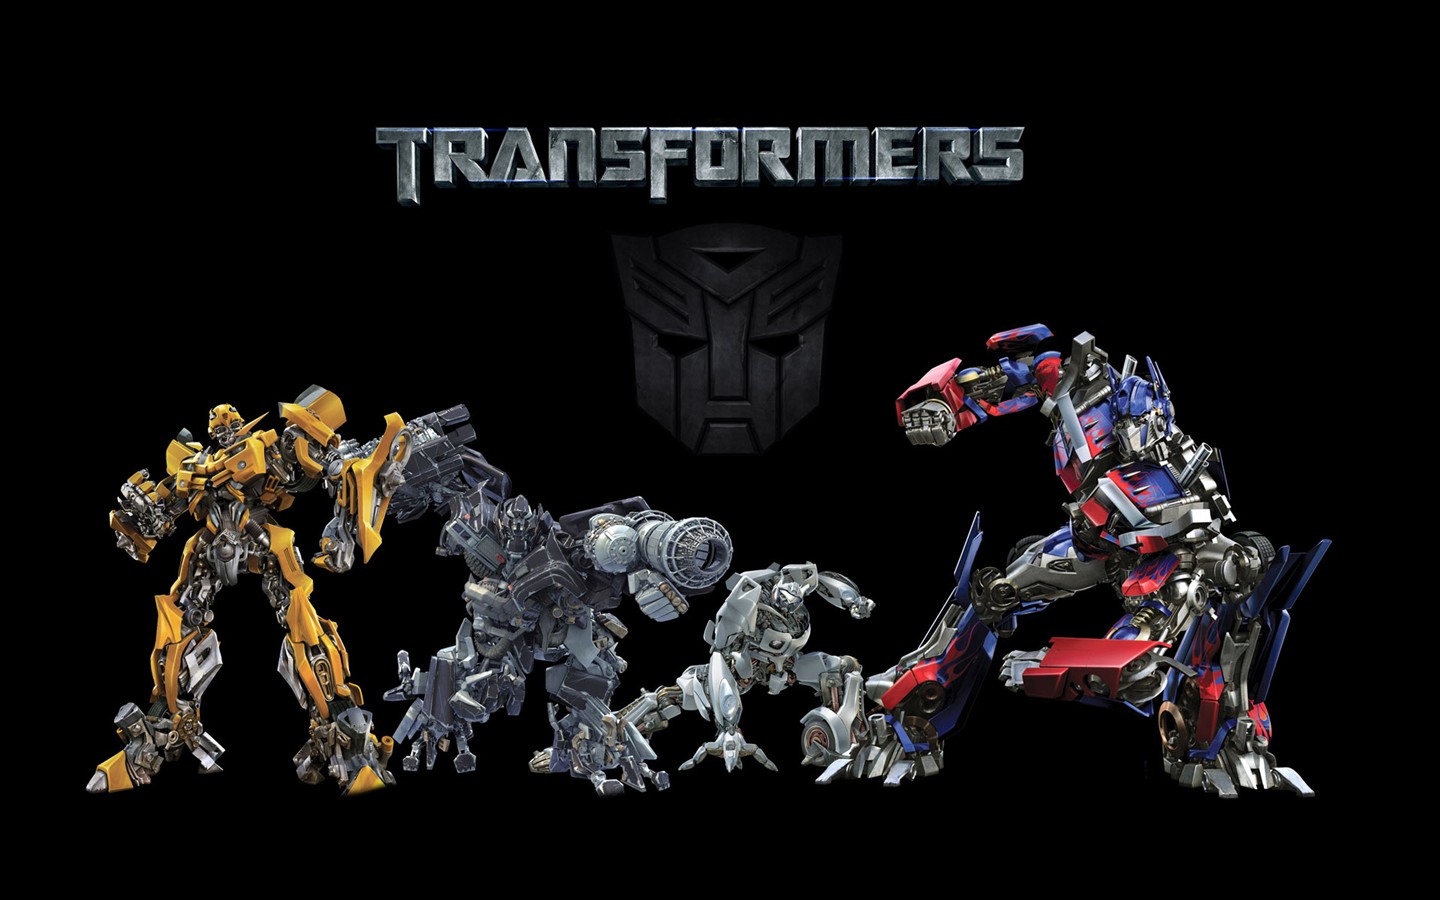 Transformers HD papel tapiz #18 - 1440x900